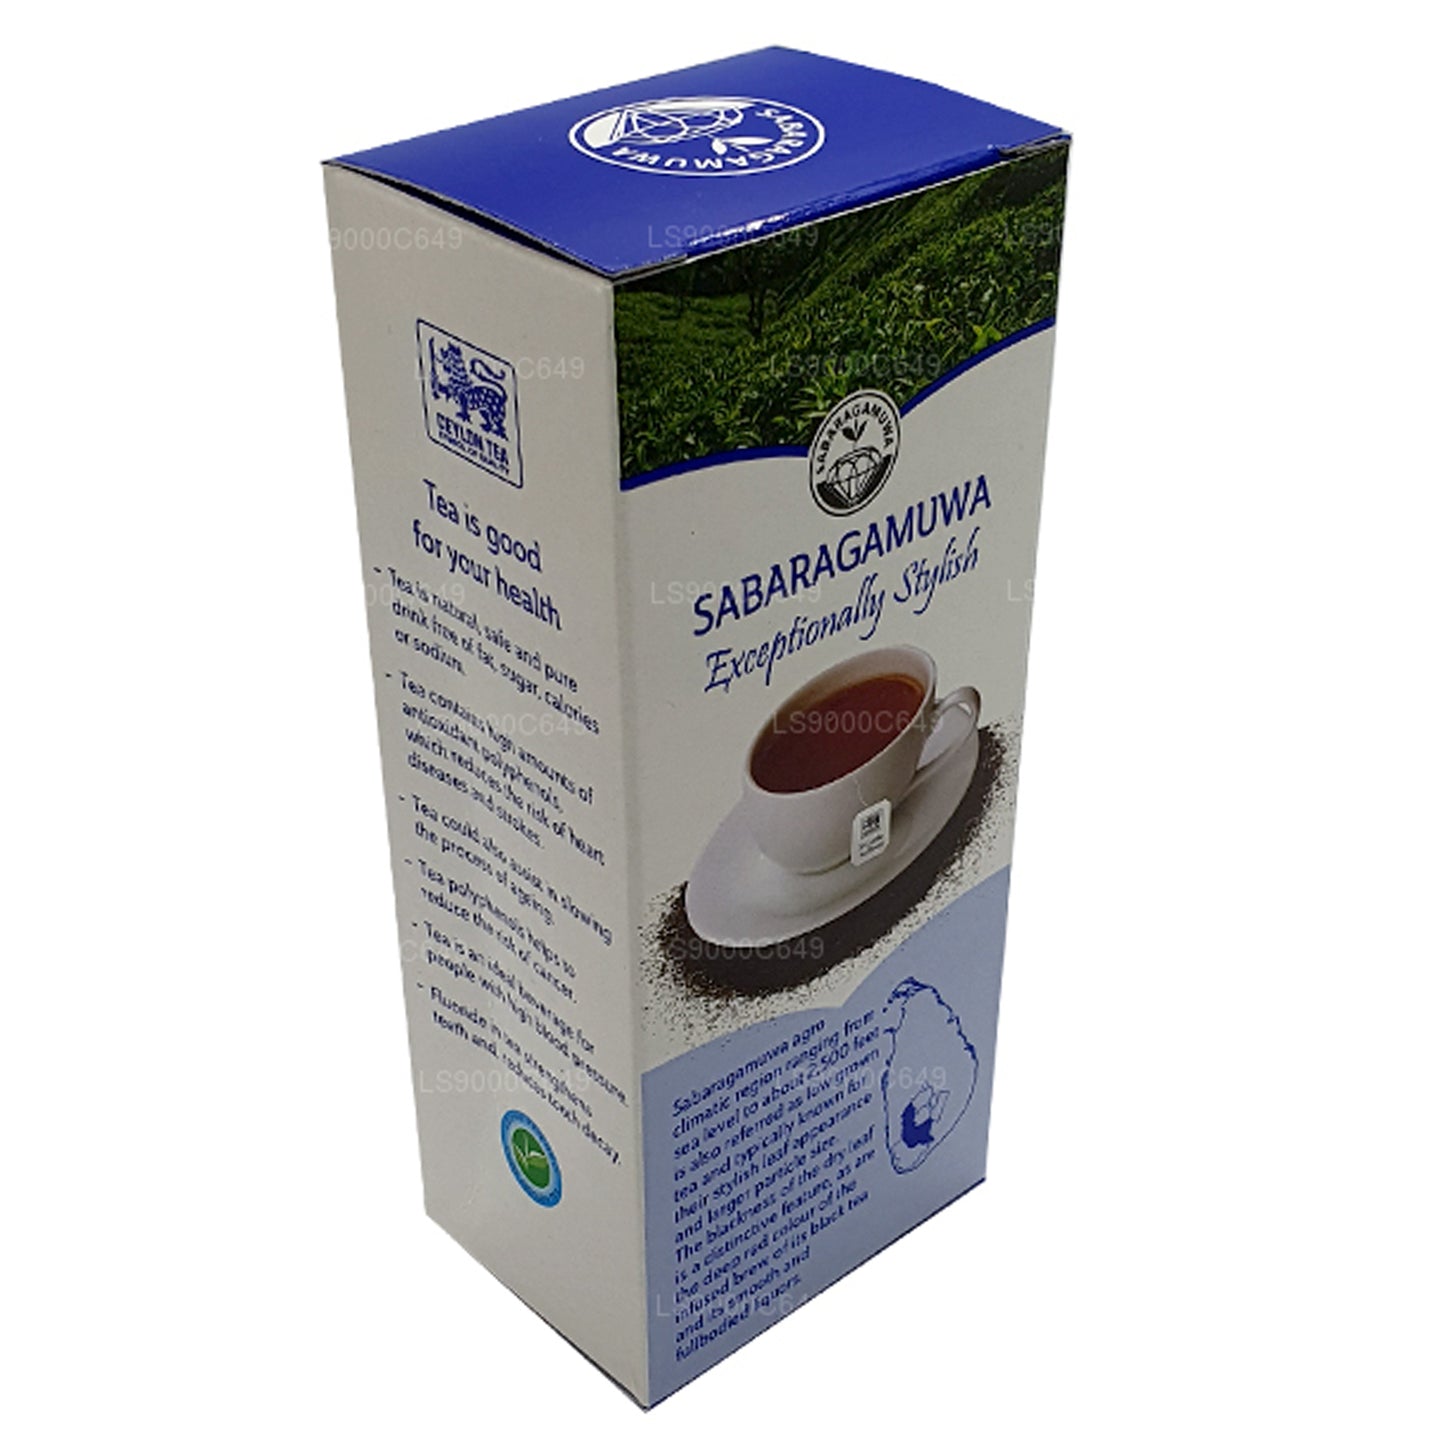 Lakpura 单一产区 Sabaragamuwa 红茶